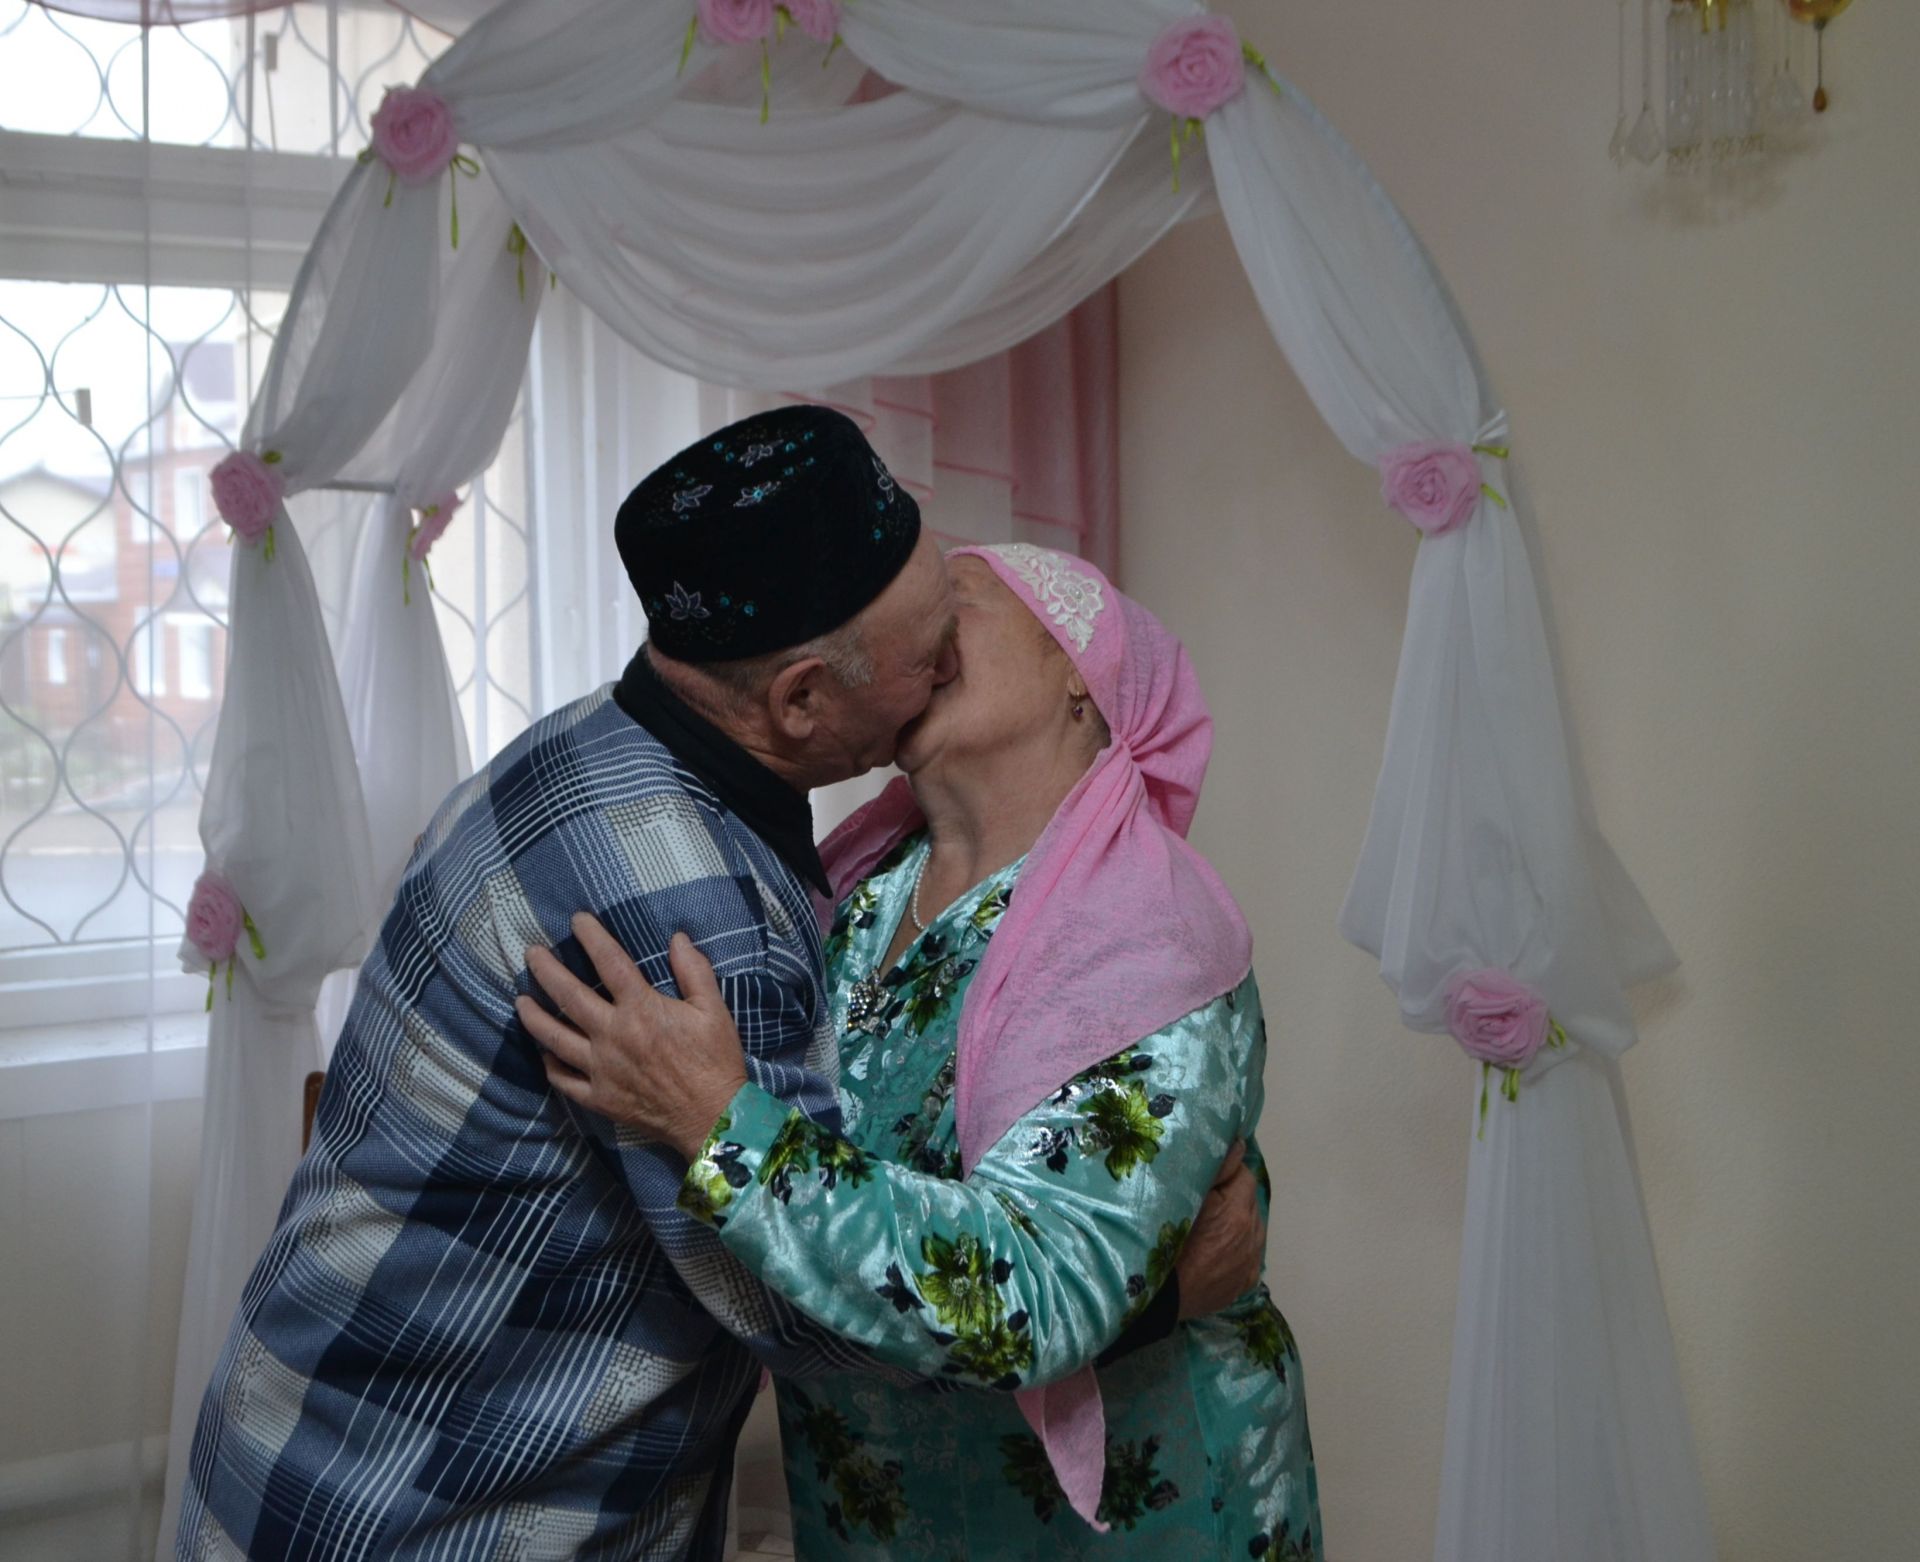 Неразлучно полвека идут они рядом: 50 лет совместной жизни отметили супруги Мухаметзяновы из Татарского Маматкозина